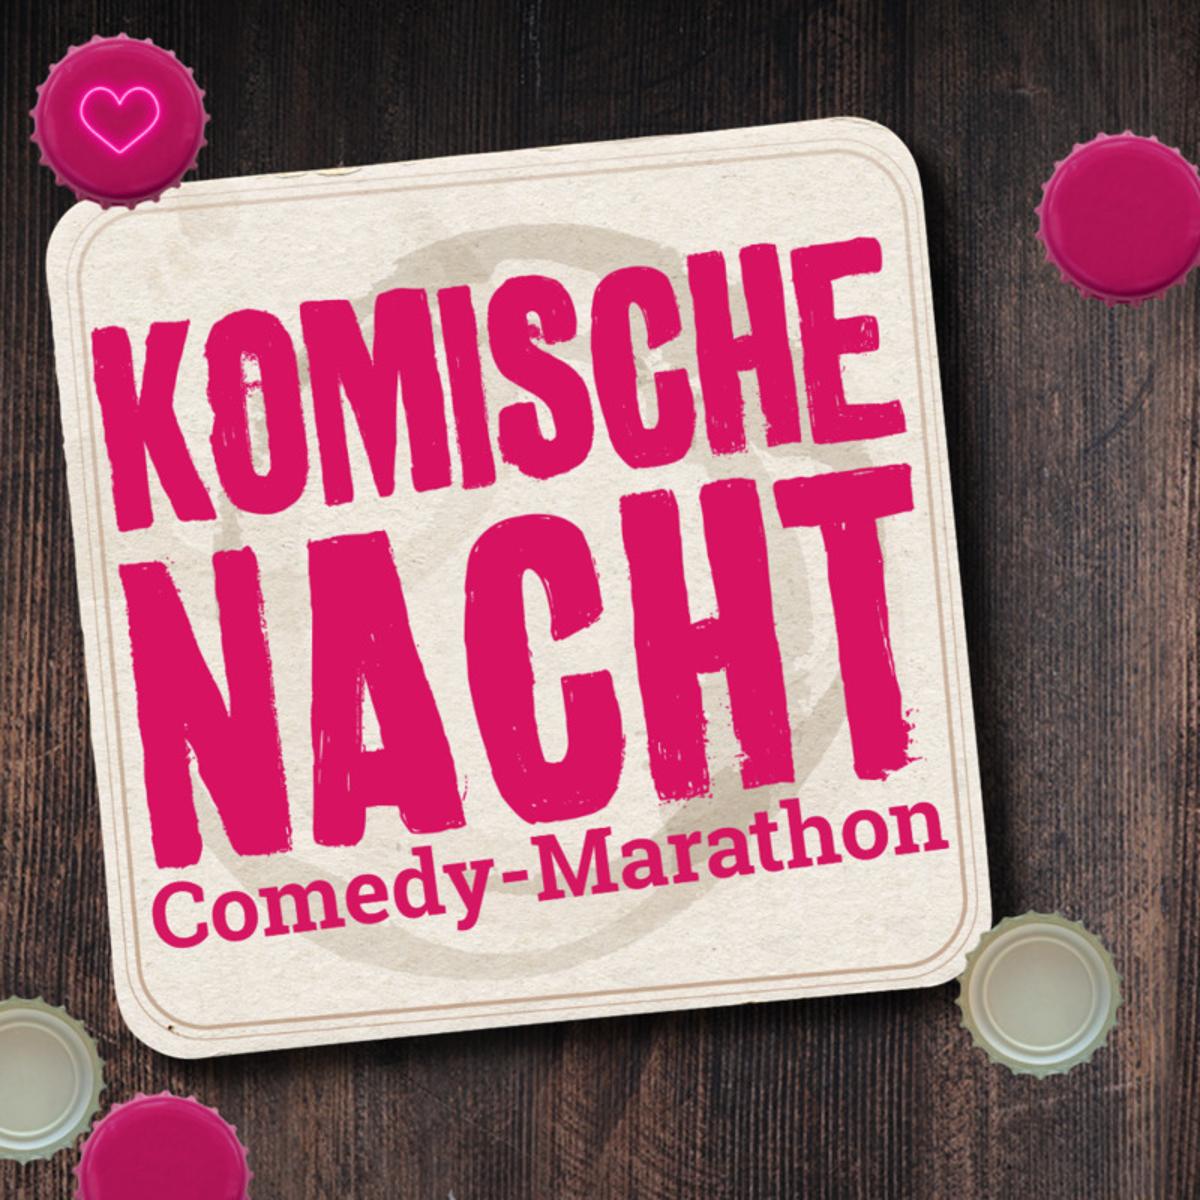 Die Komische Nacht ist eines der erfolgreichsten Live-Comedy-Formate in Deutschland. In den schönsten Cafés, Bars und Restaurants einer Stadt erleben die Gäste und ihre Freunde und Familie bei dieser beispiellosen Show einen ausgelassenen Abend - mit bester Unterhaltung durch ...